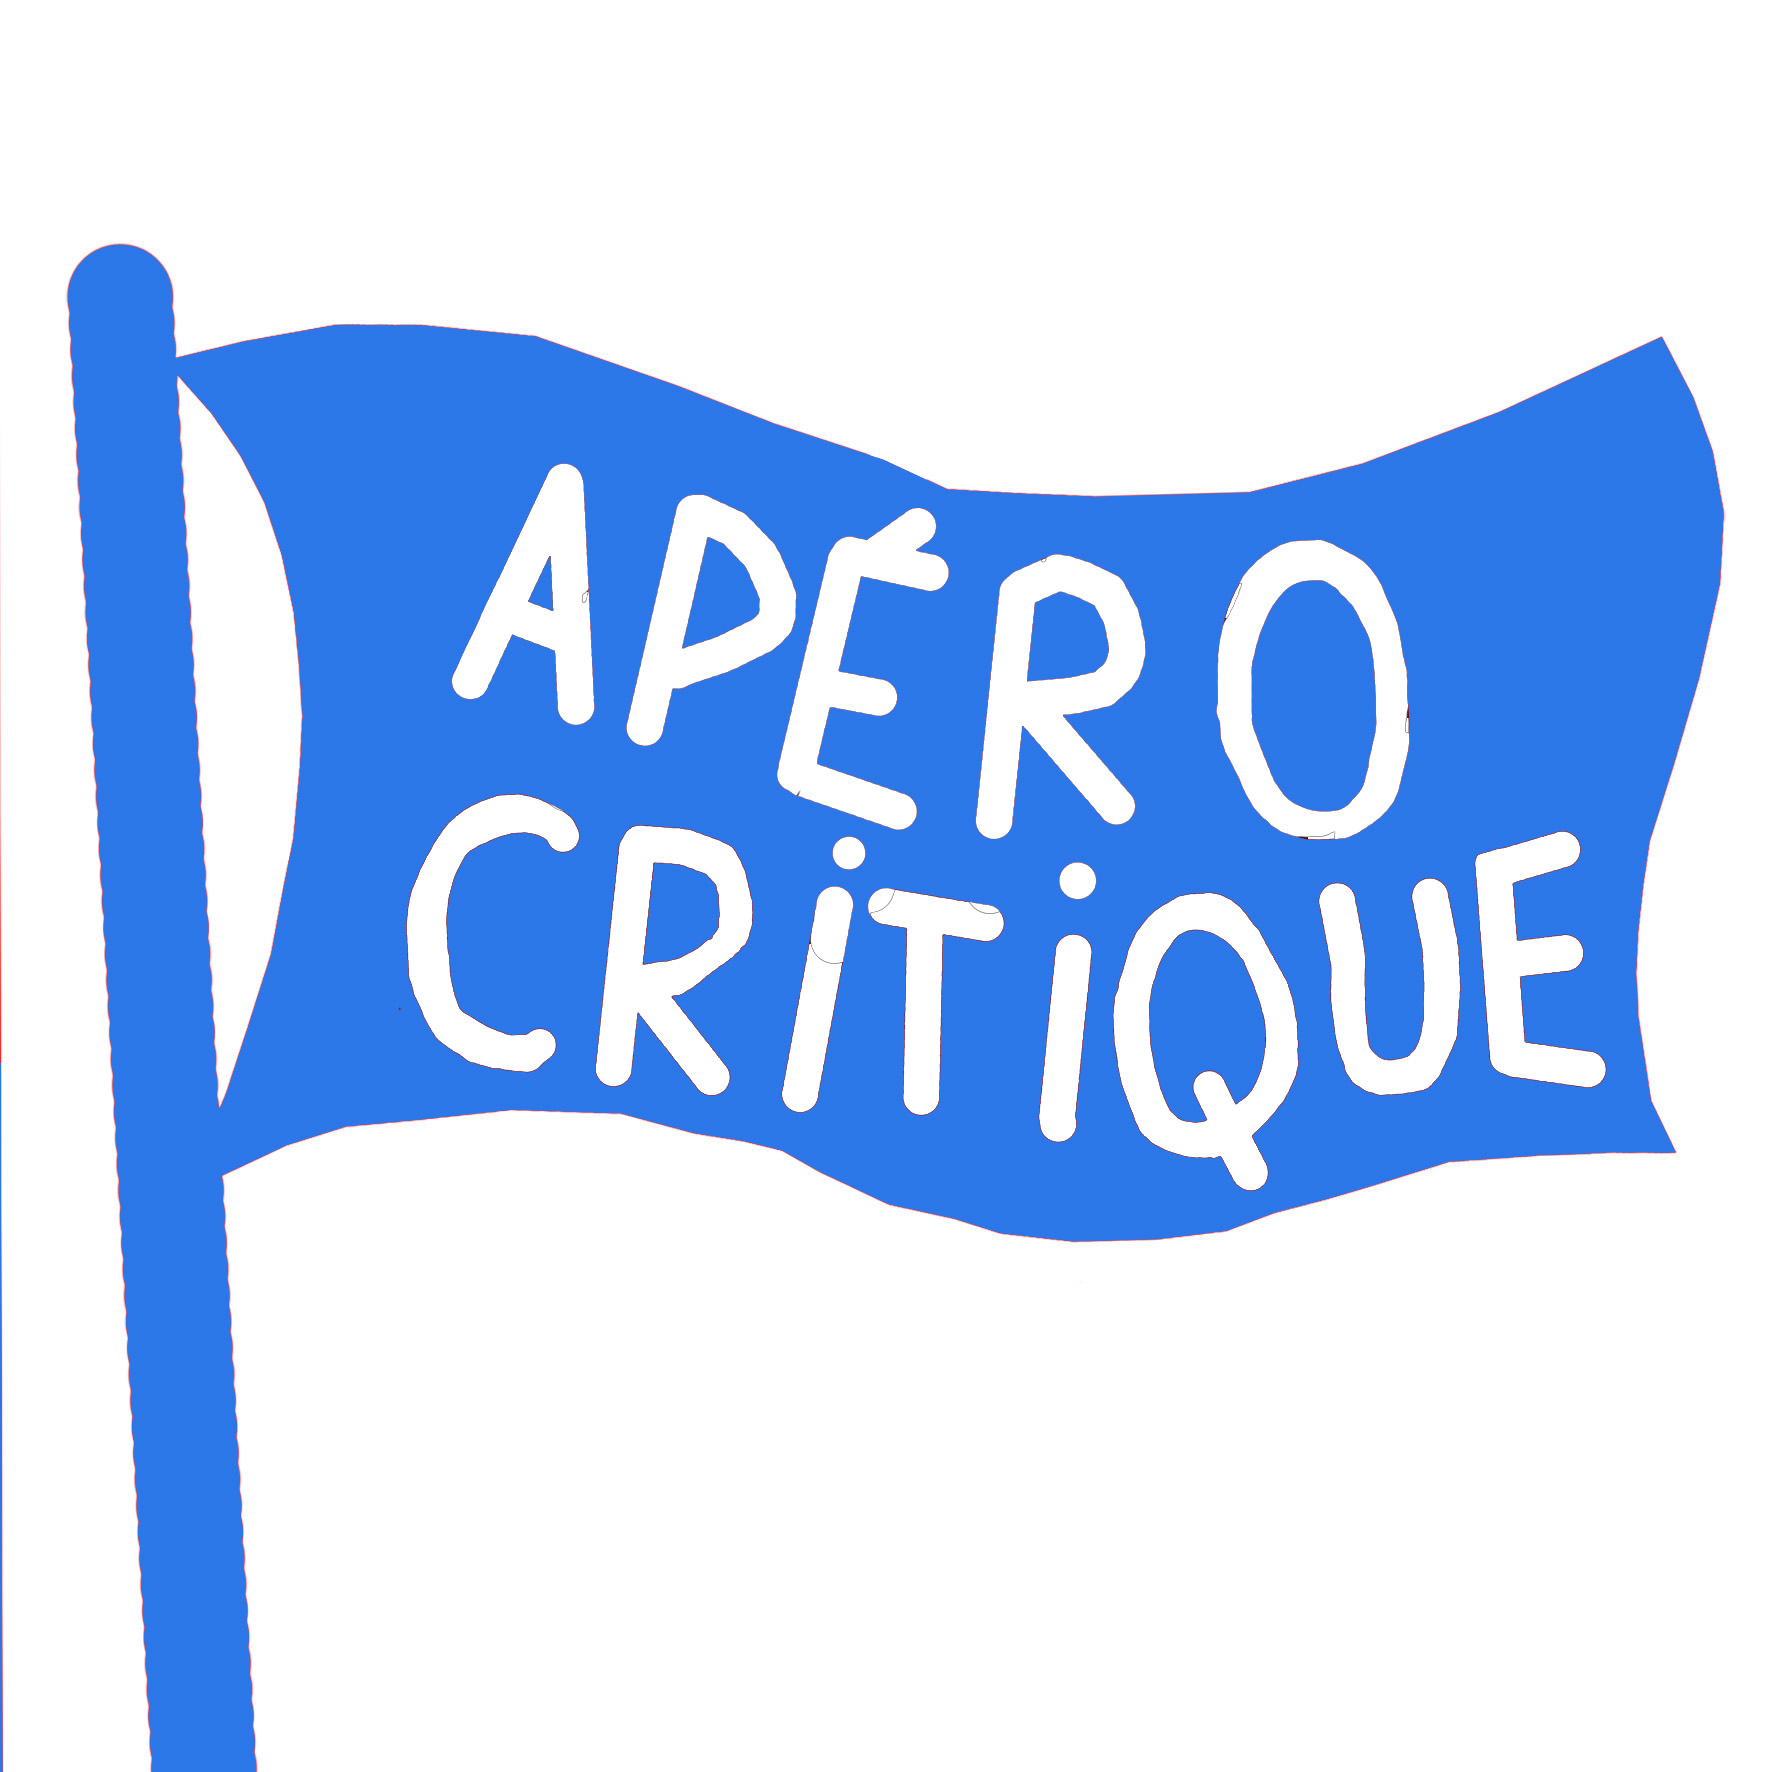 apero_critique_carre_bleu